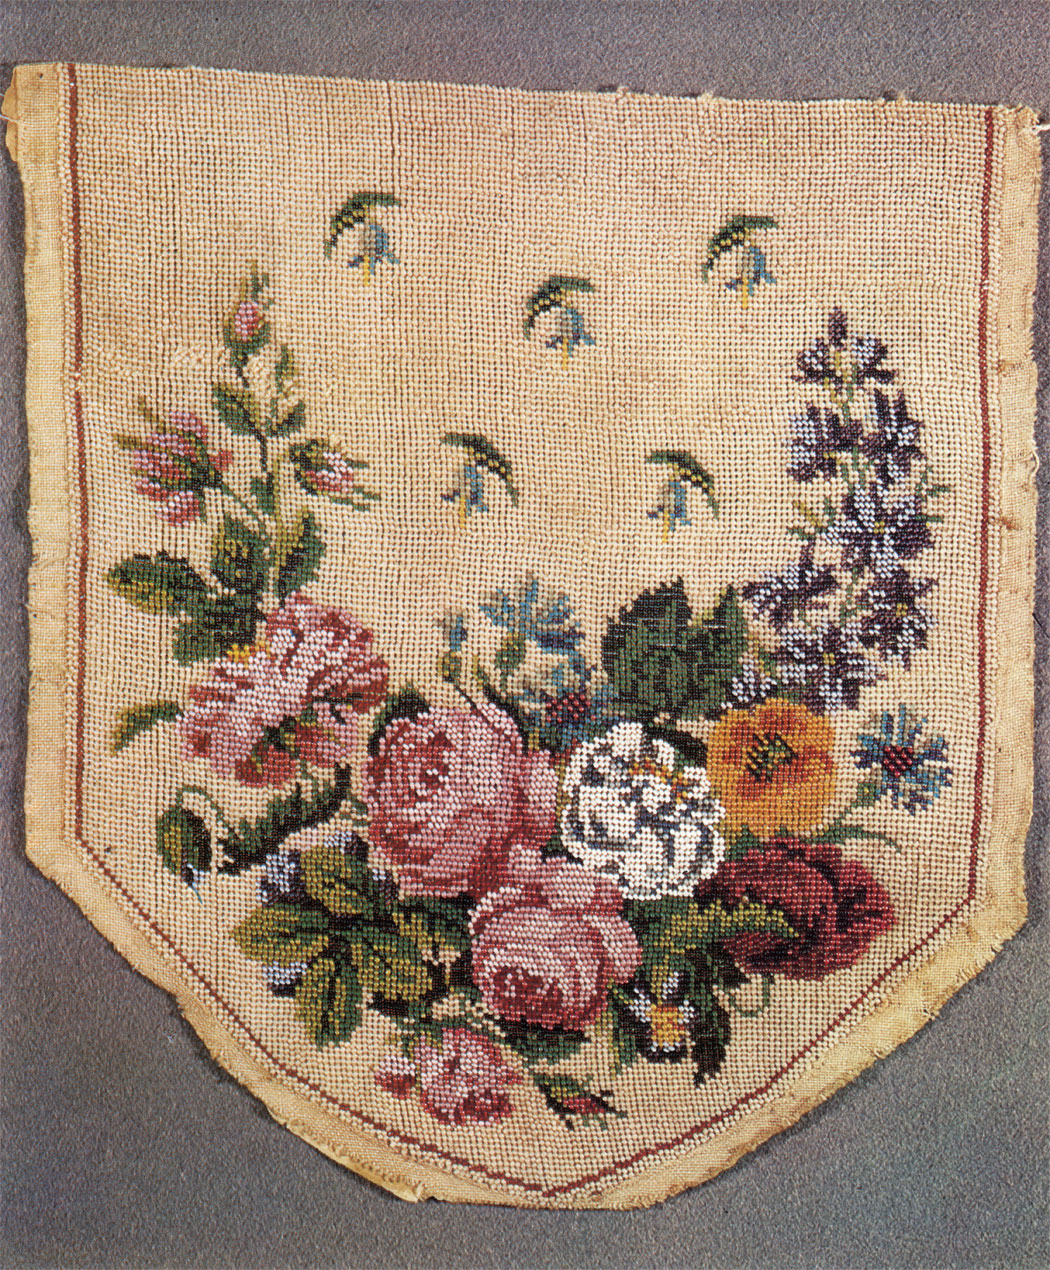 Embroidery on a handbag. 1830s. 20,5x19. RT-4719